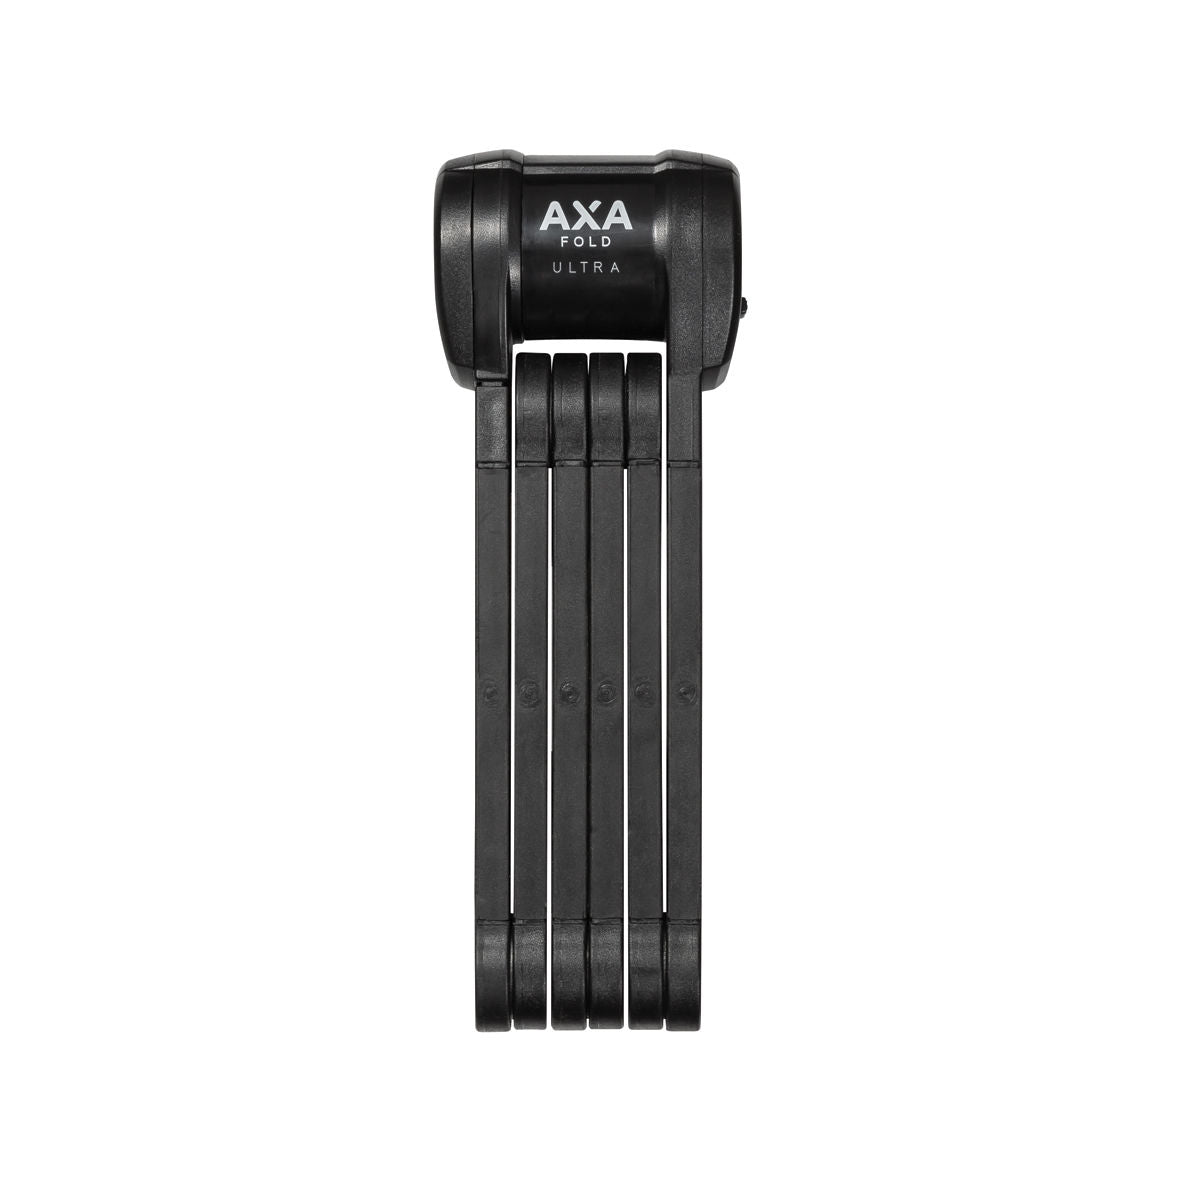 AXA Lock 59831095US - AXA Fold Ultra 90cm EBIKE